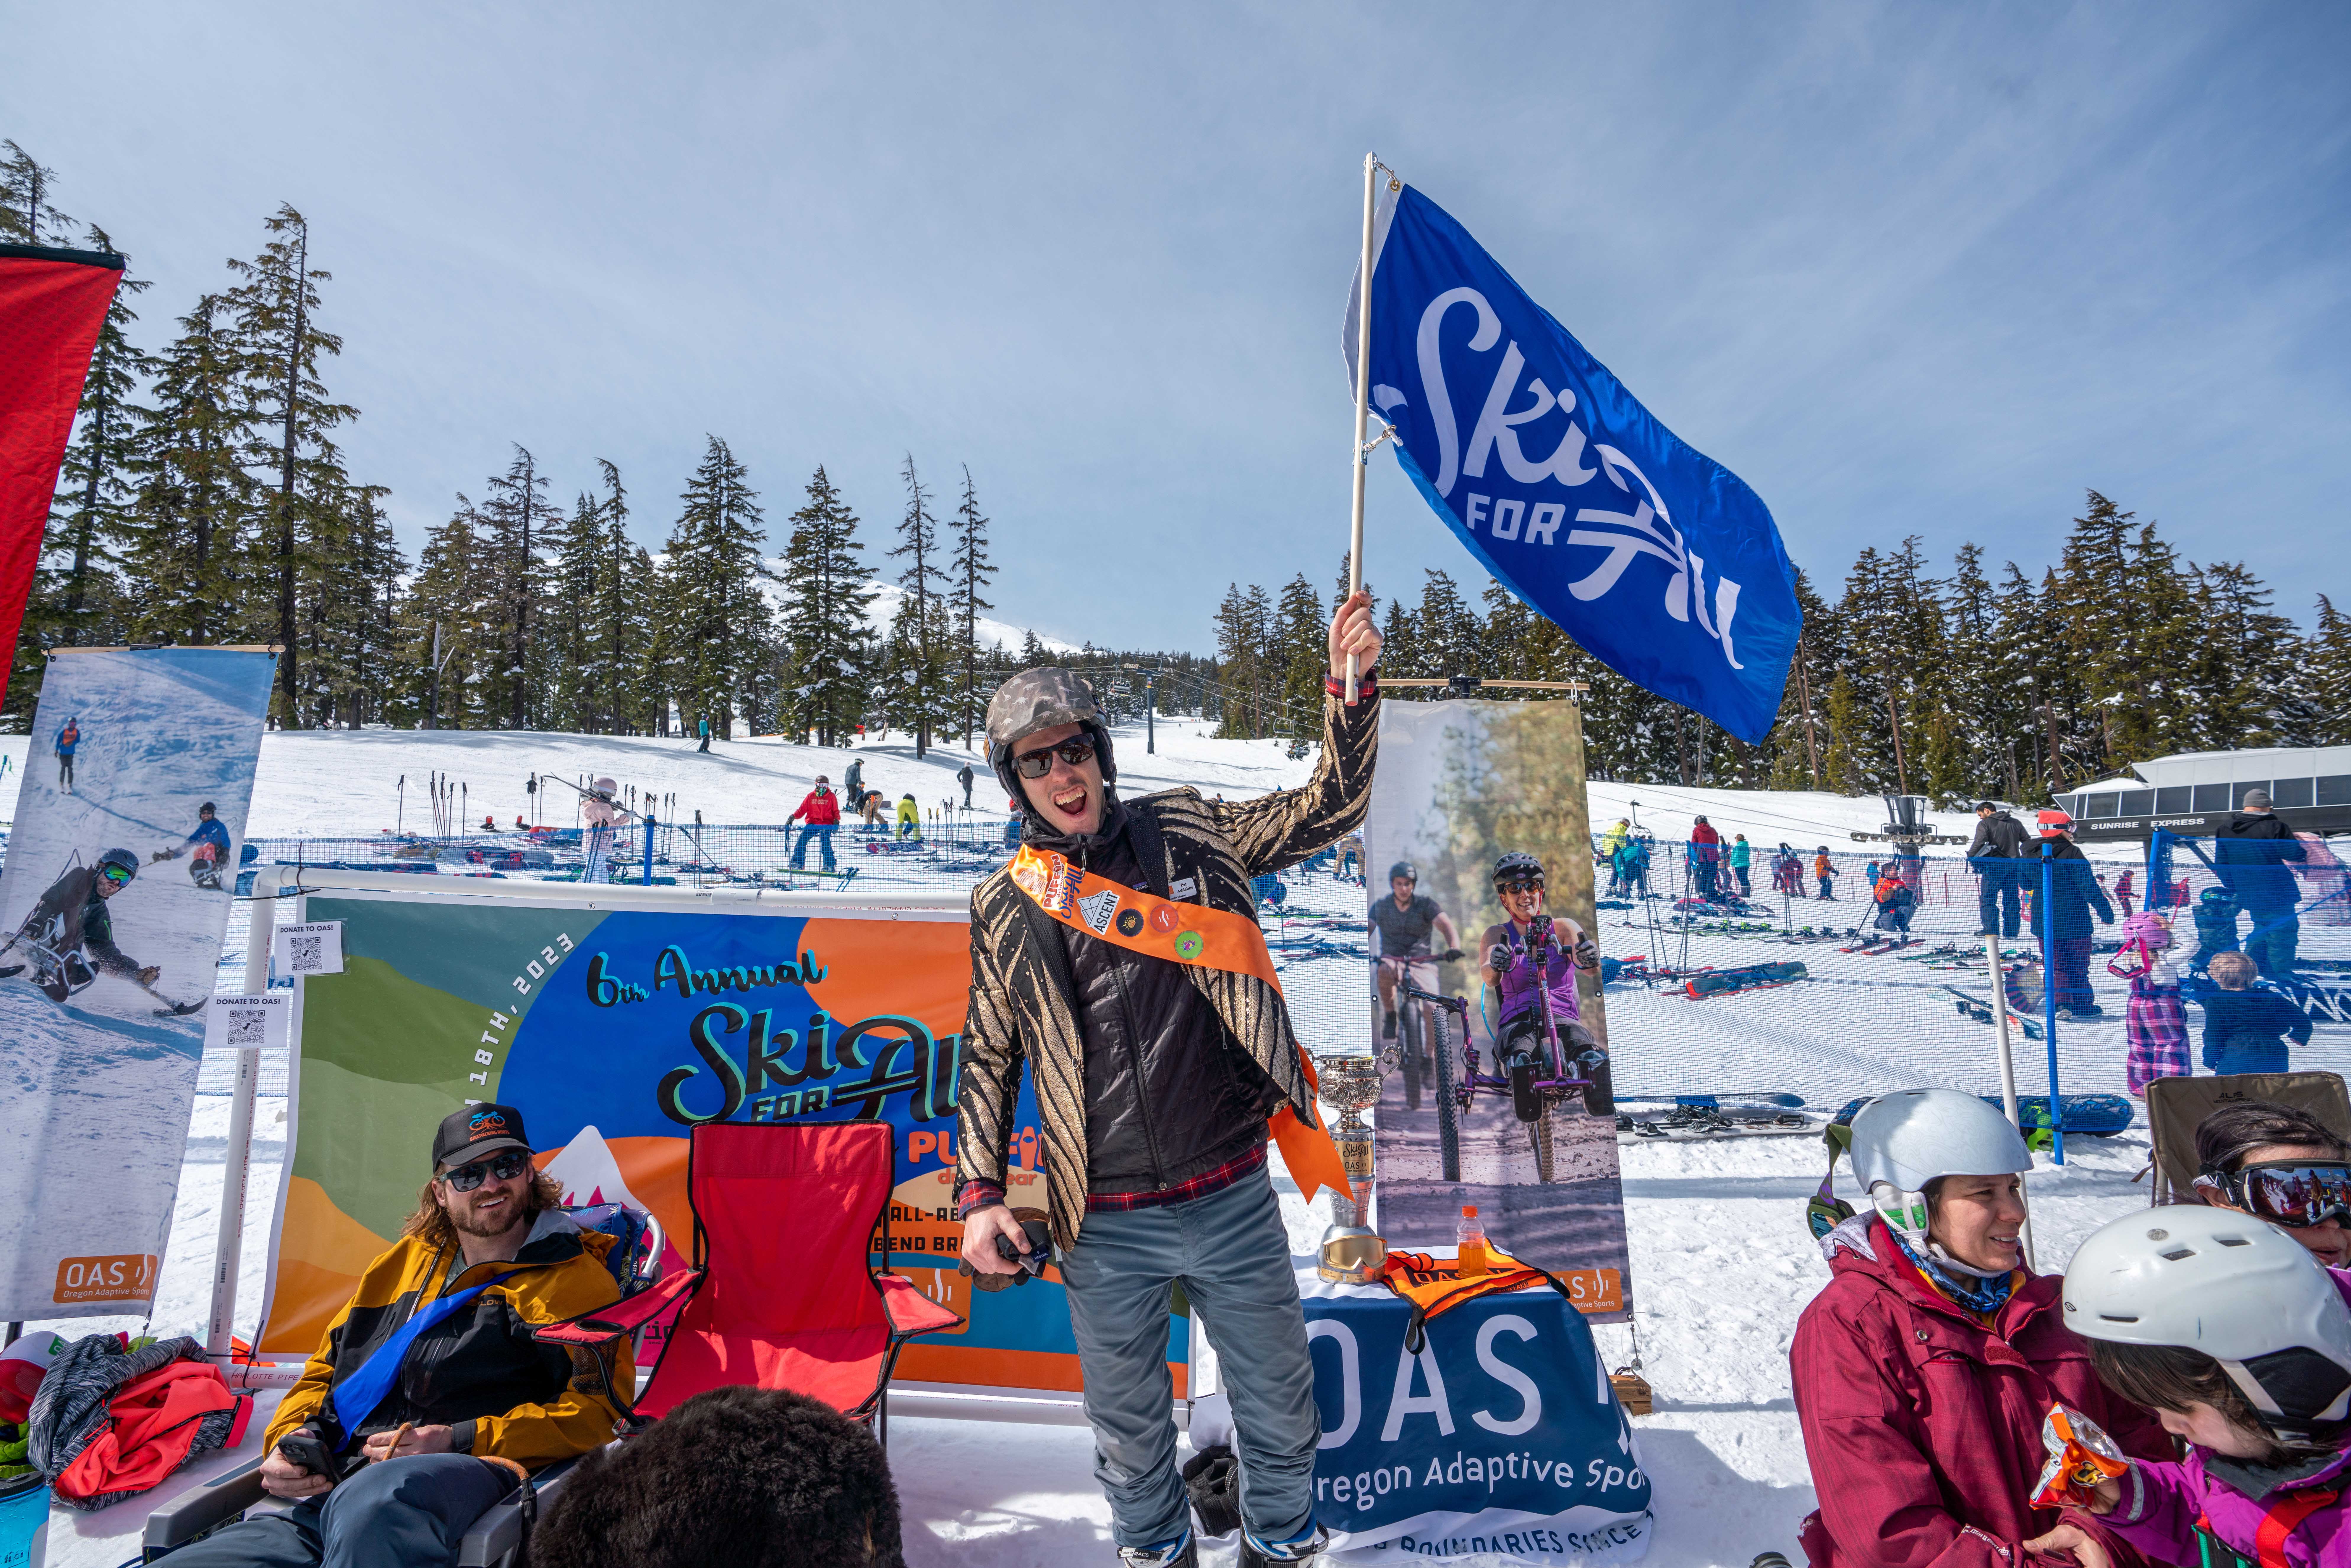 Ski for All - Oregon Adaptive Sports